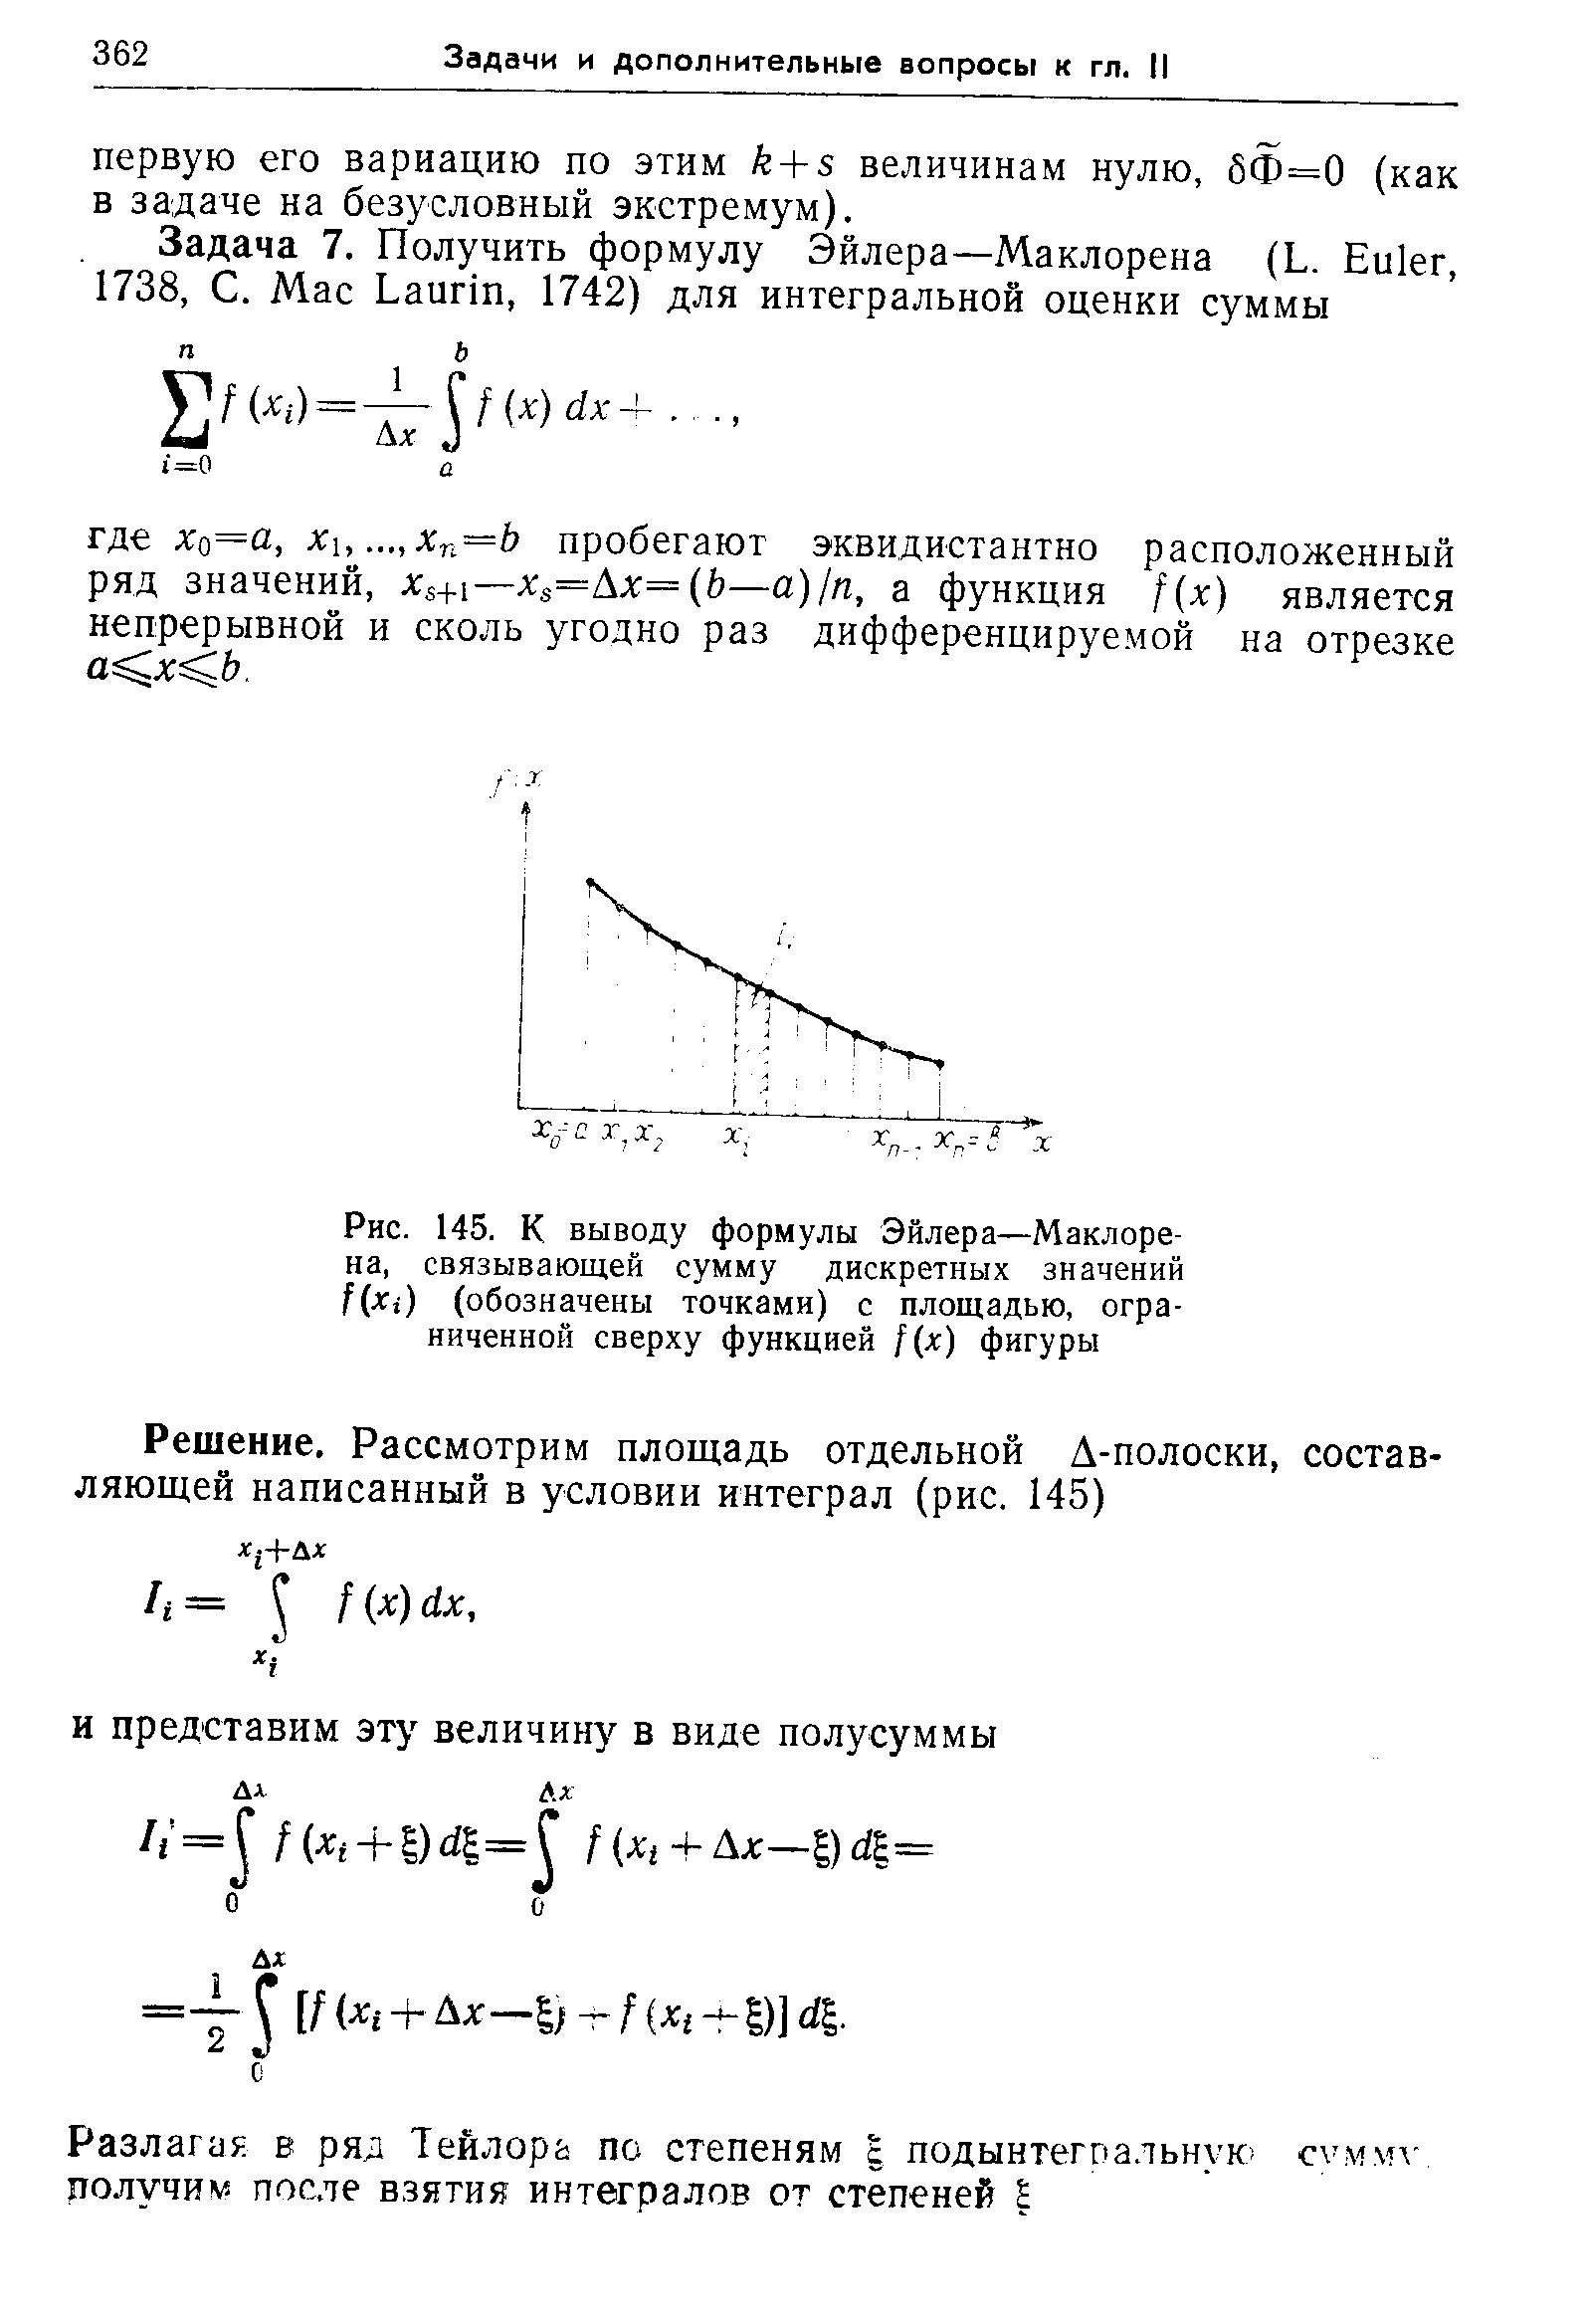 Рис. 145. К выводу формулы Эйлера—Маклорена, связывающей сумму дискретных значений f(Xi (обозначены точками) с площадью, ограниченной сверху функцией [(х) фигуры
